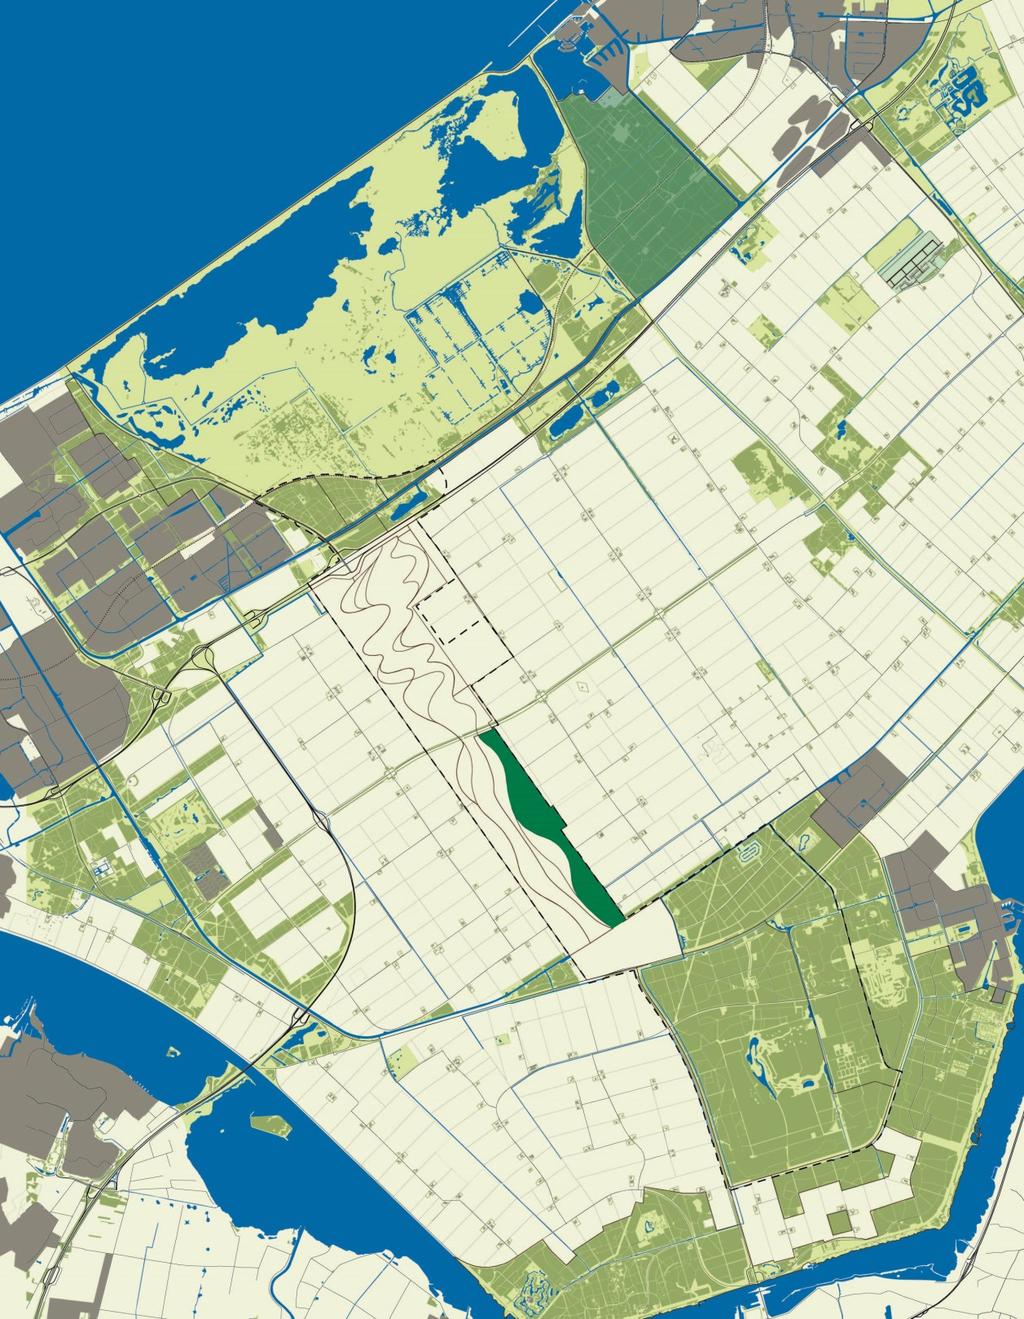 Boskaart Bijgevoegd is de kaart waarop de locatie van de 182 ha bos is aangegeven.